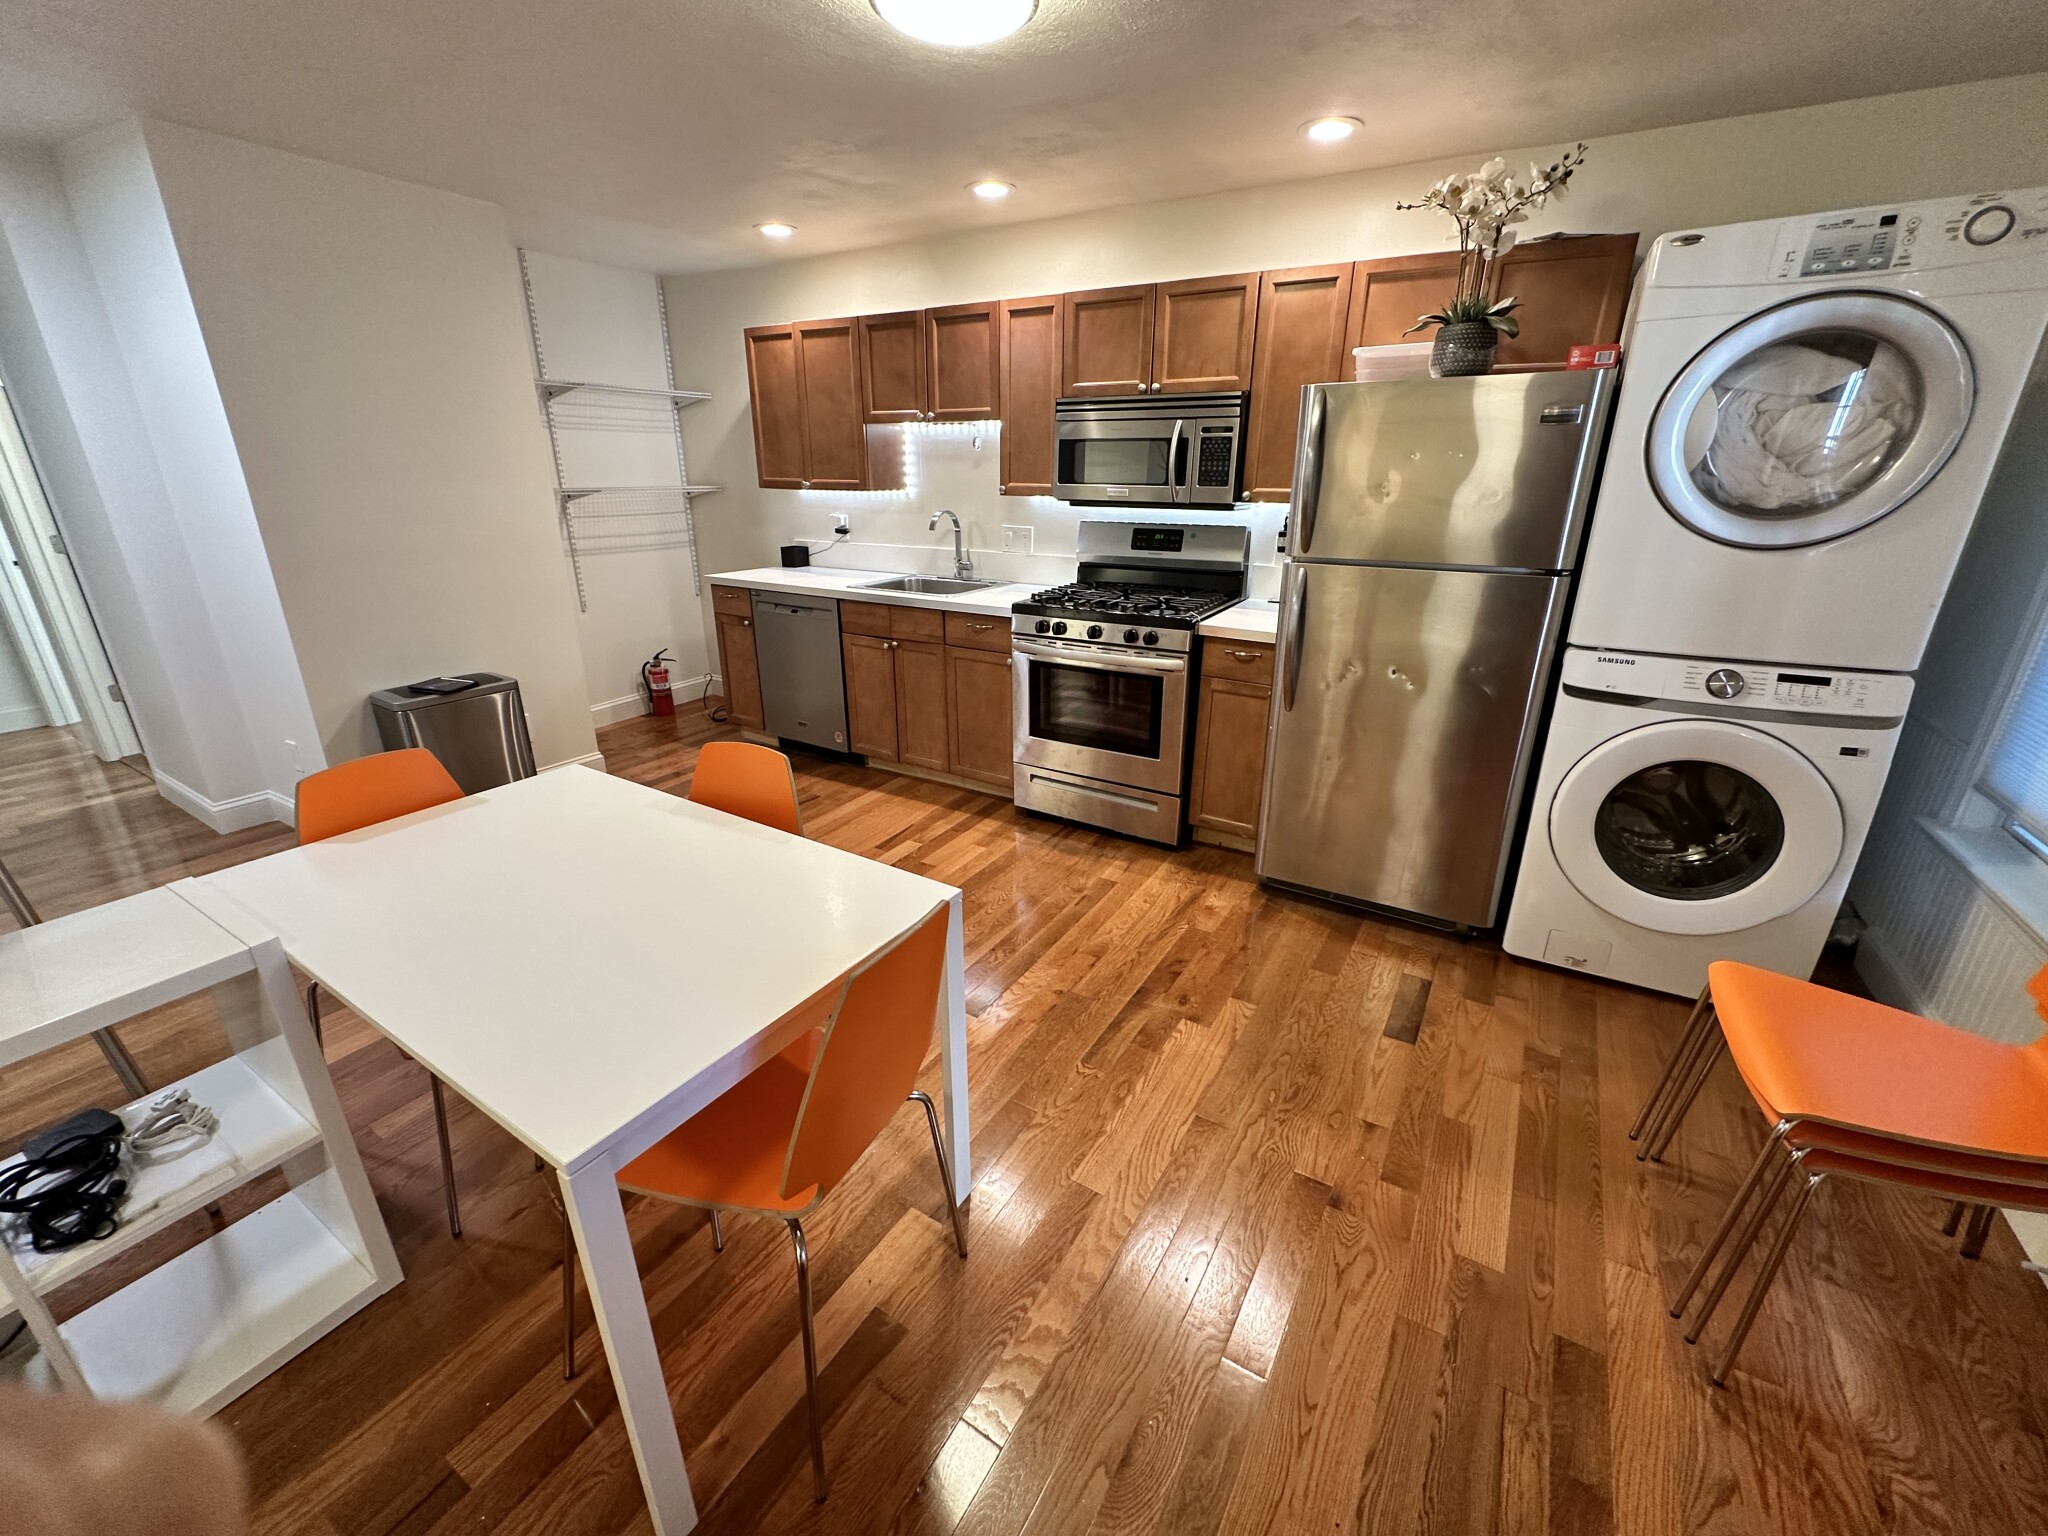 Photos of apartment on Mercer,Boston MA 02127